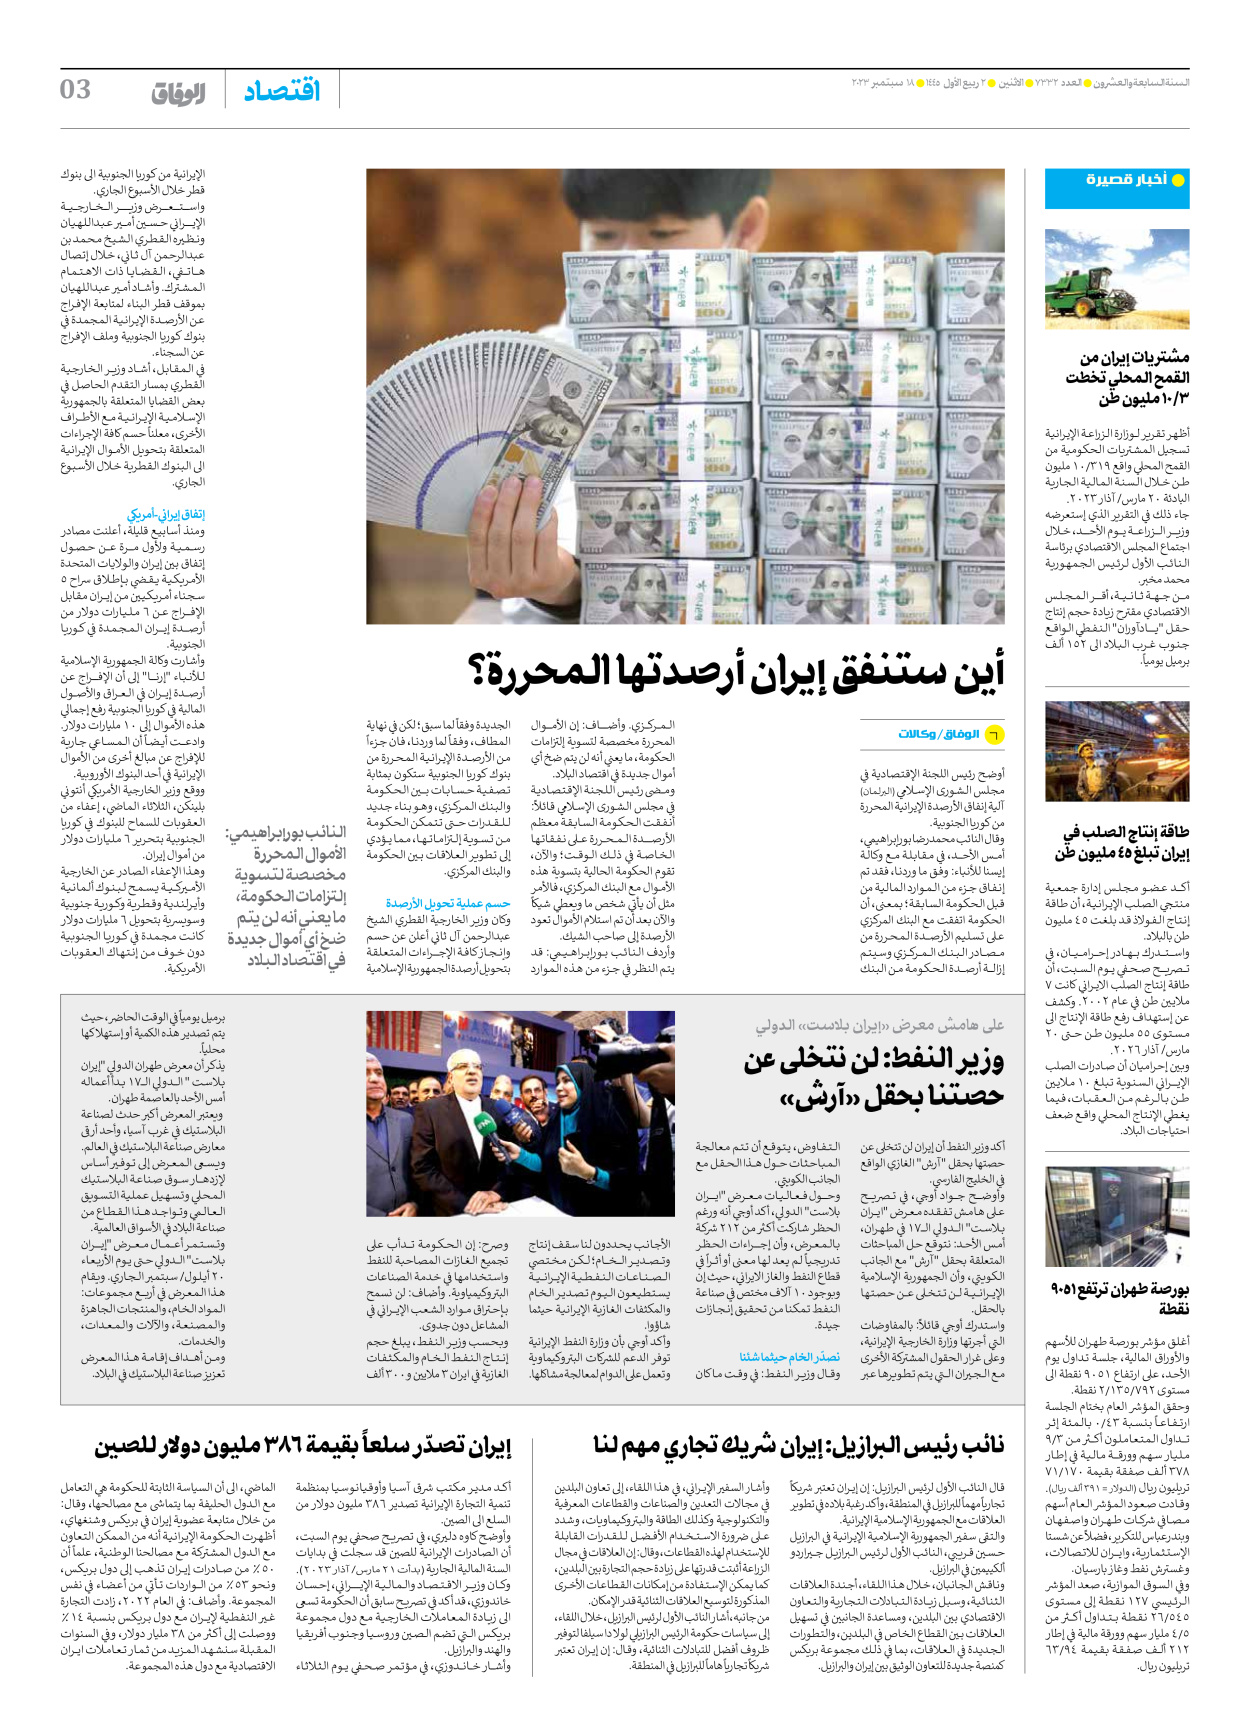 صحیفة ایران الدولیة الوفاق - العدد سبعة آلاف وثلاثمائة واثنان وثلاثون - ١٨ سبتمبر ٢٠٢٣ - الصفحة ۳